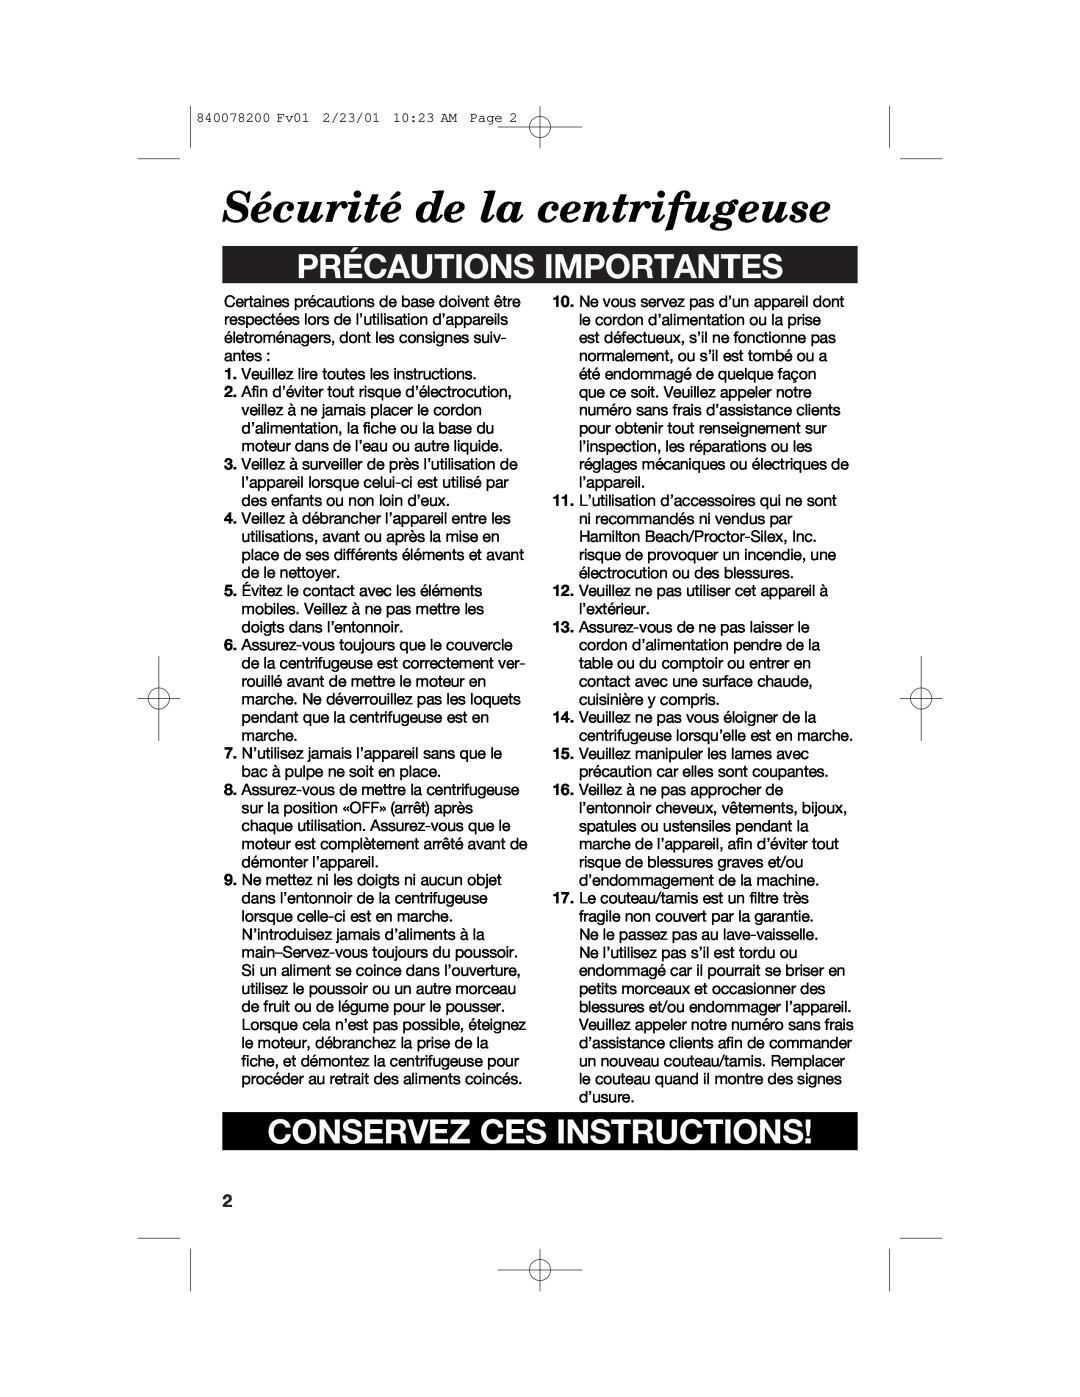 Hamilton Beach 67333 manual Sécurité de la centrifugeuse, Précautions Importantes, Conservez Ces Instructions 